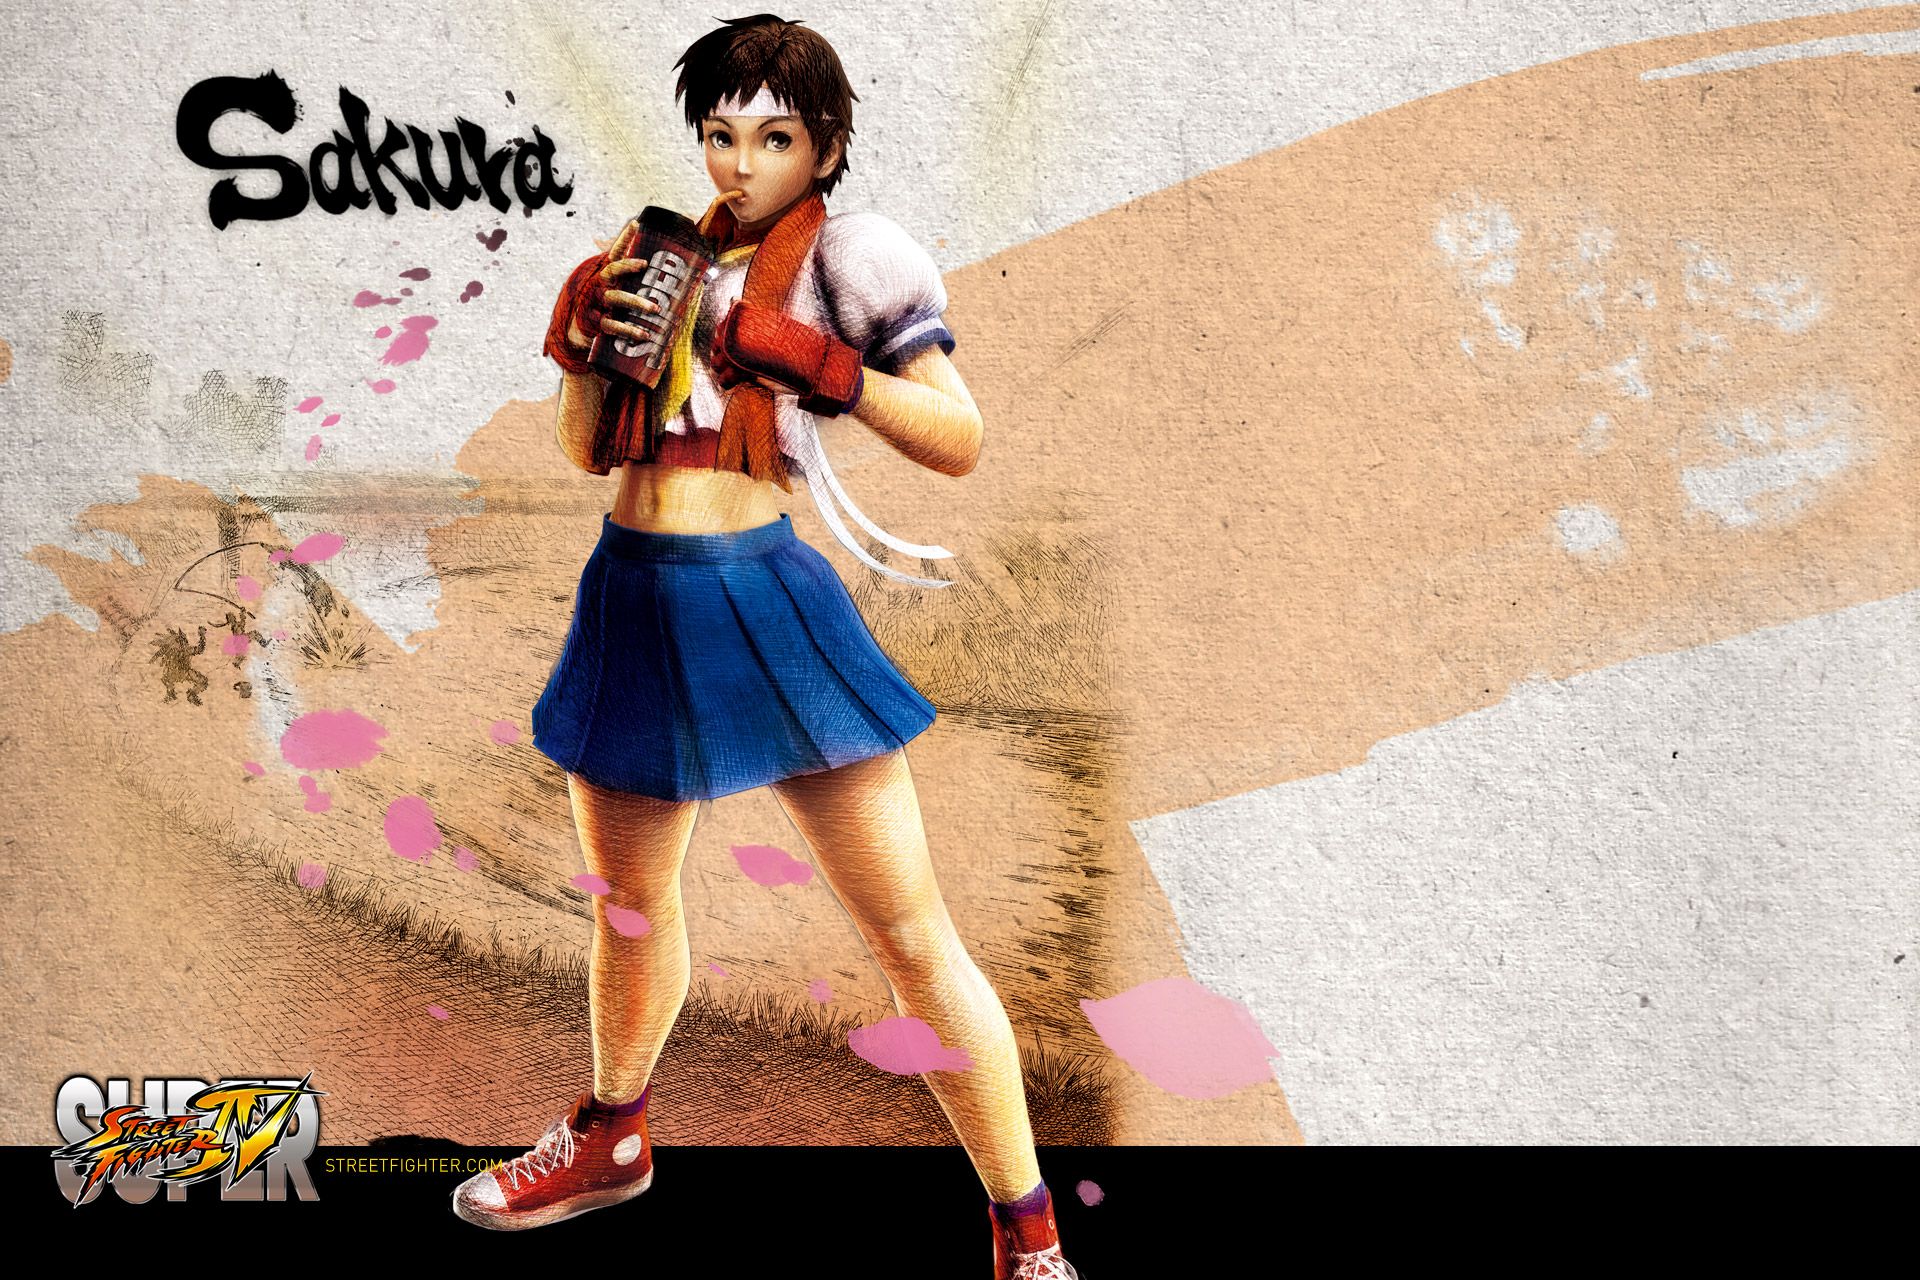 Sakura Wallpaper Street Fighter